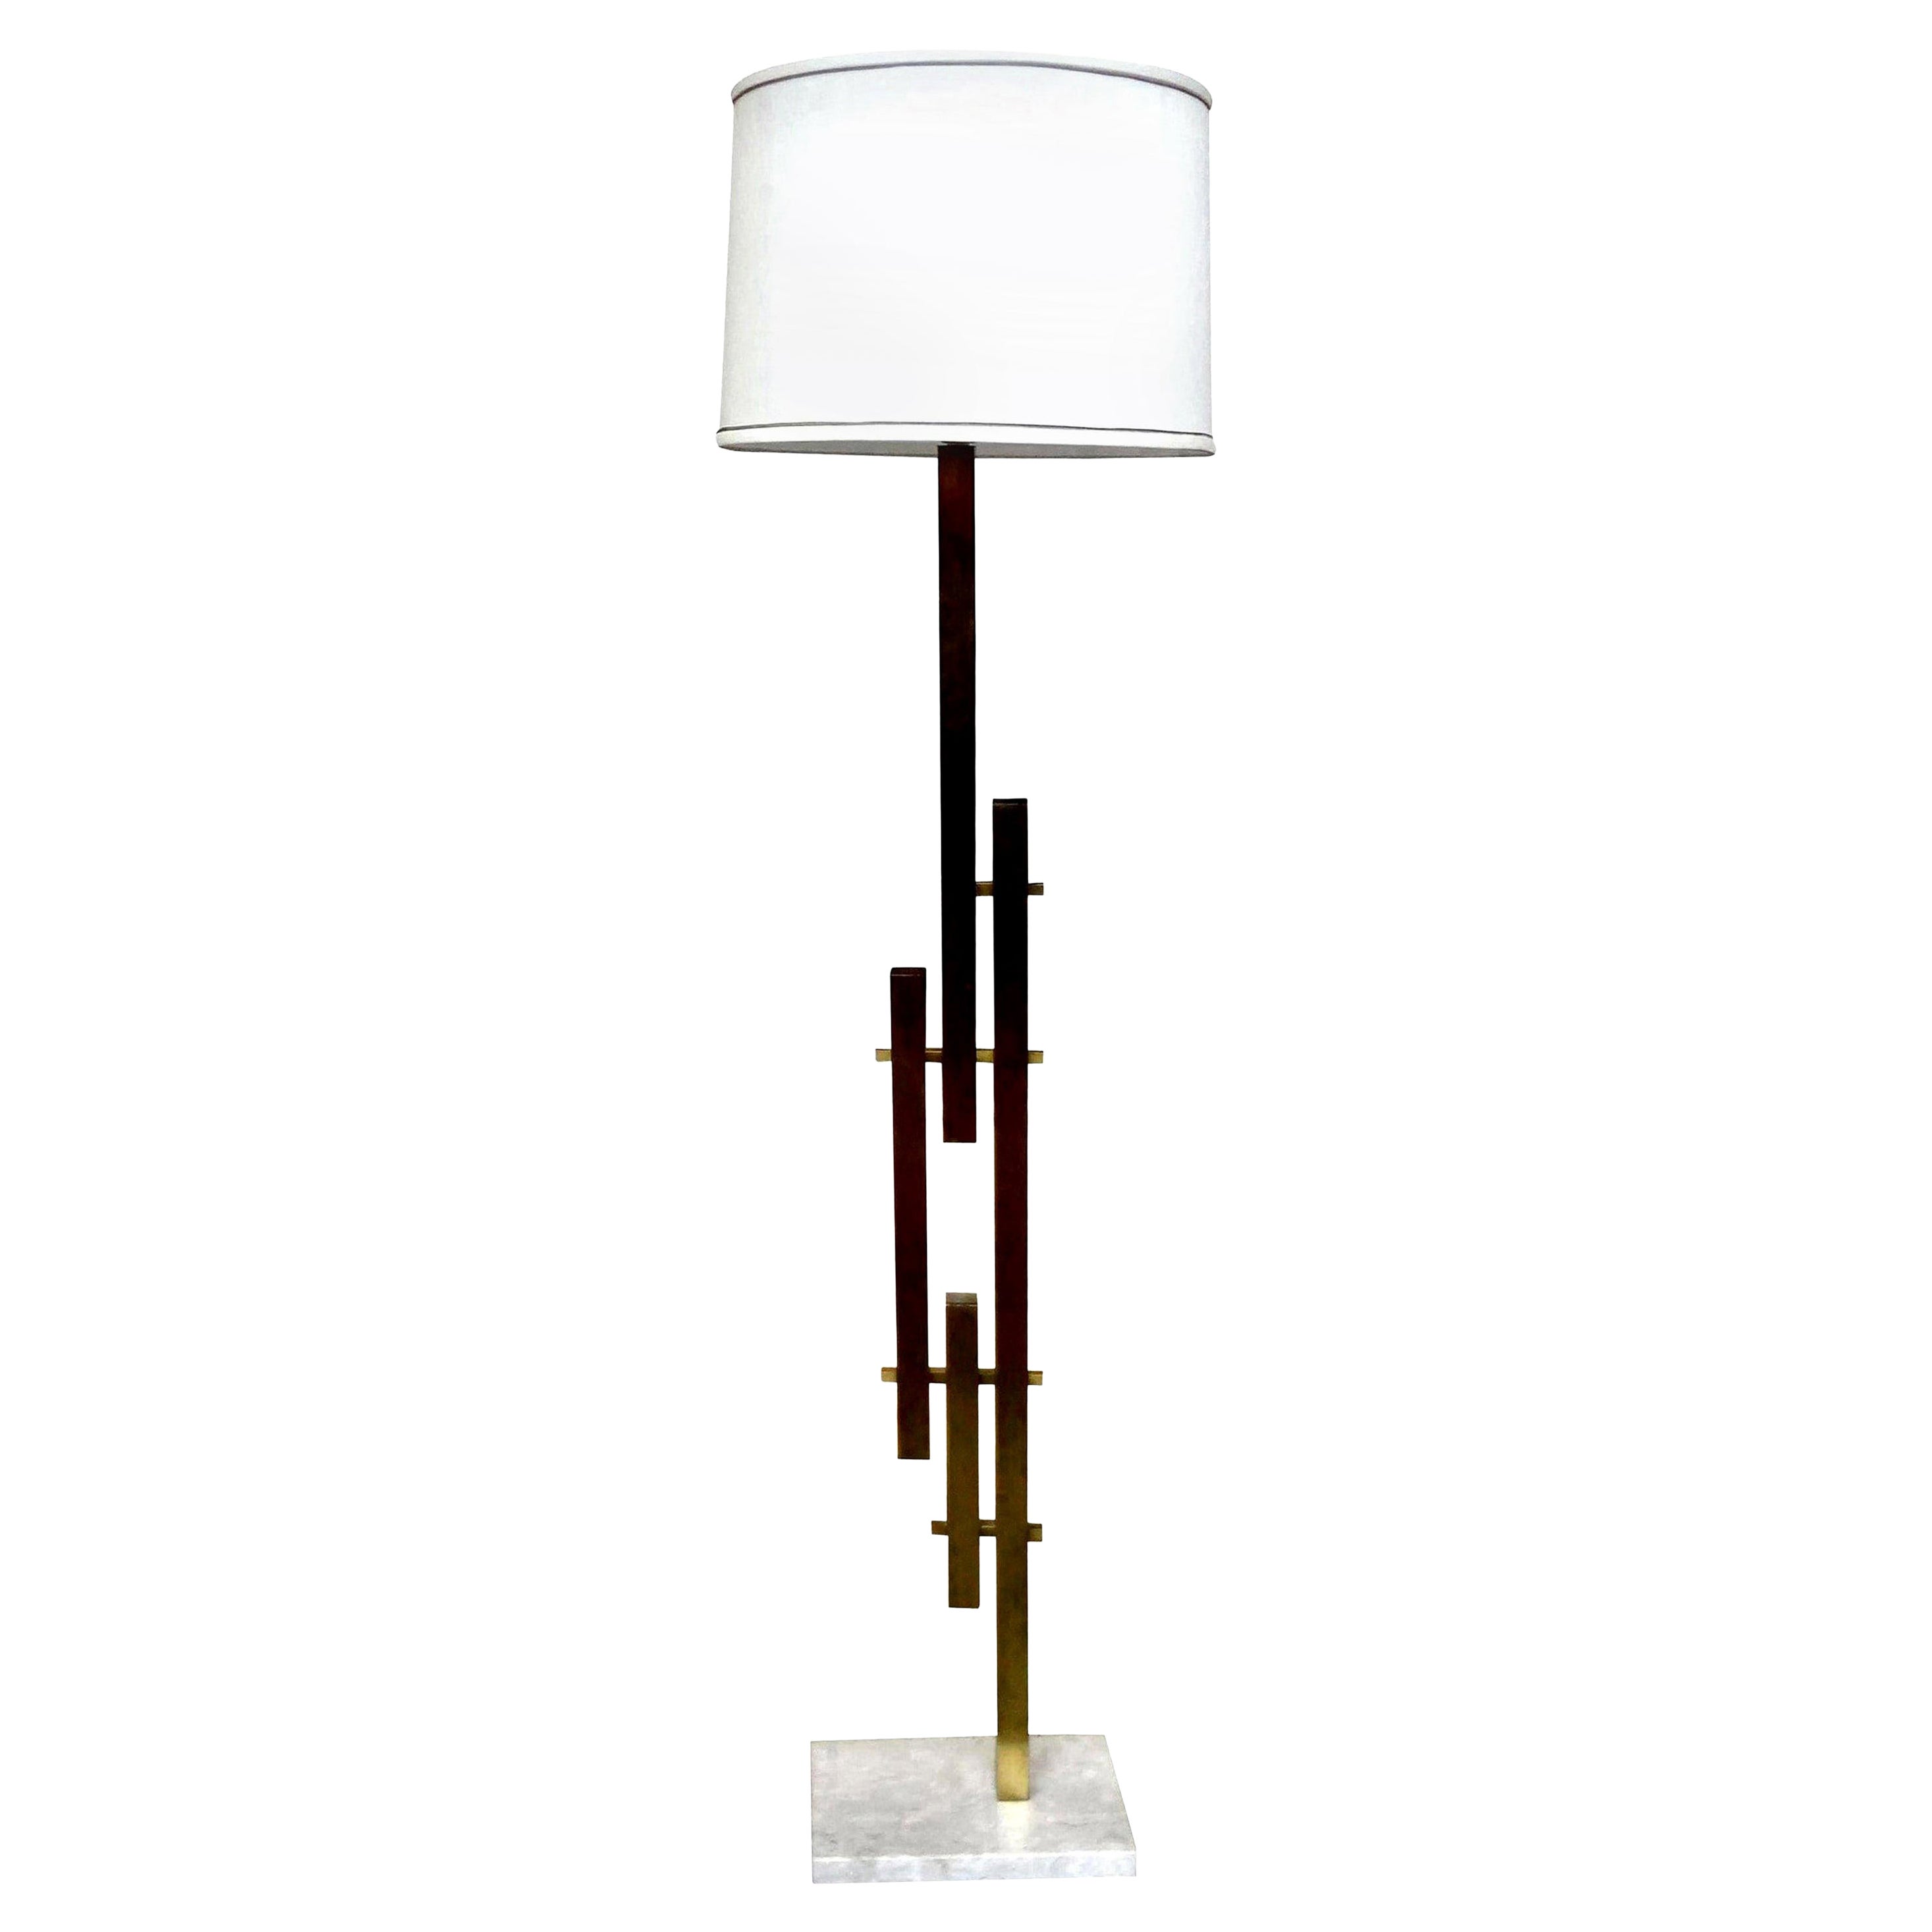 Italian Modernist Sciolari Style Brass Floor Lamp on Marble Base